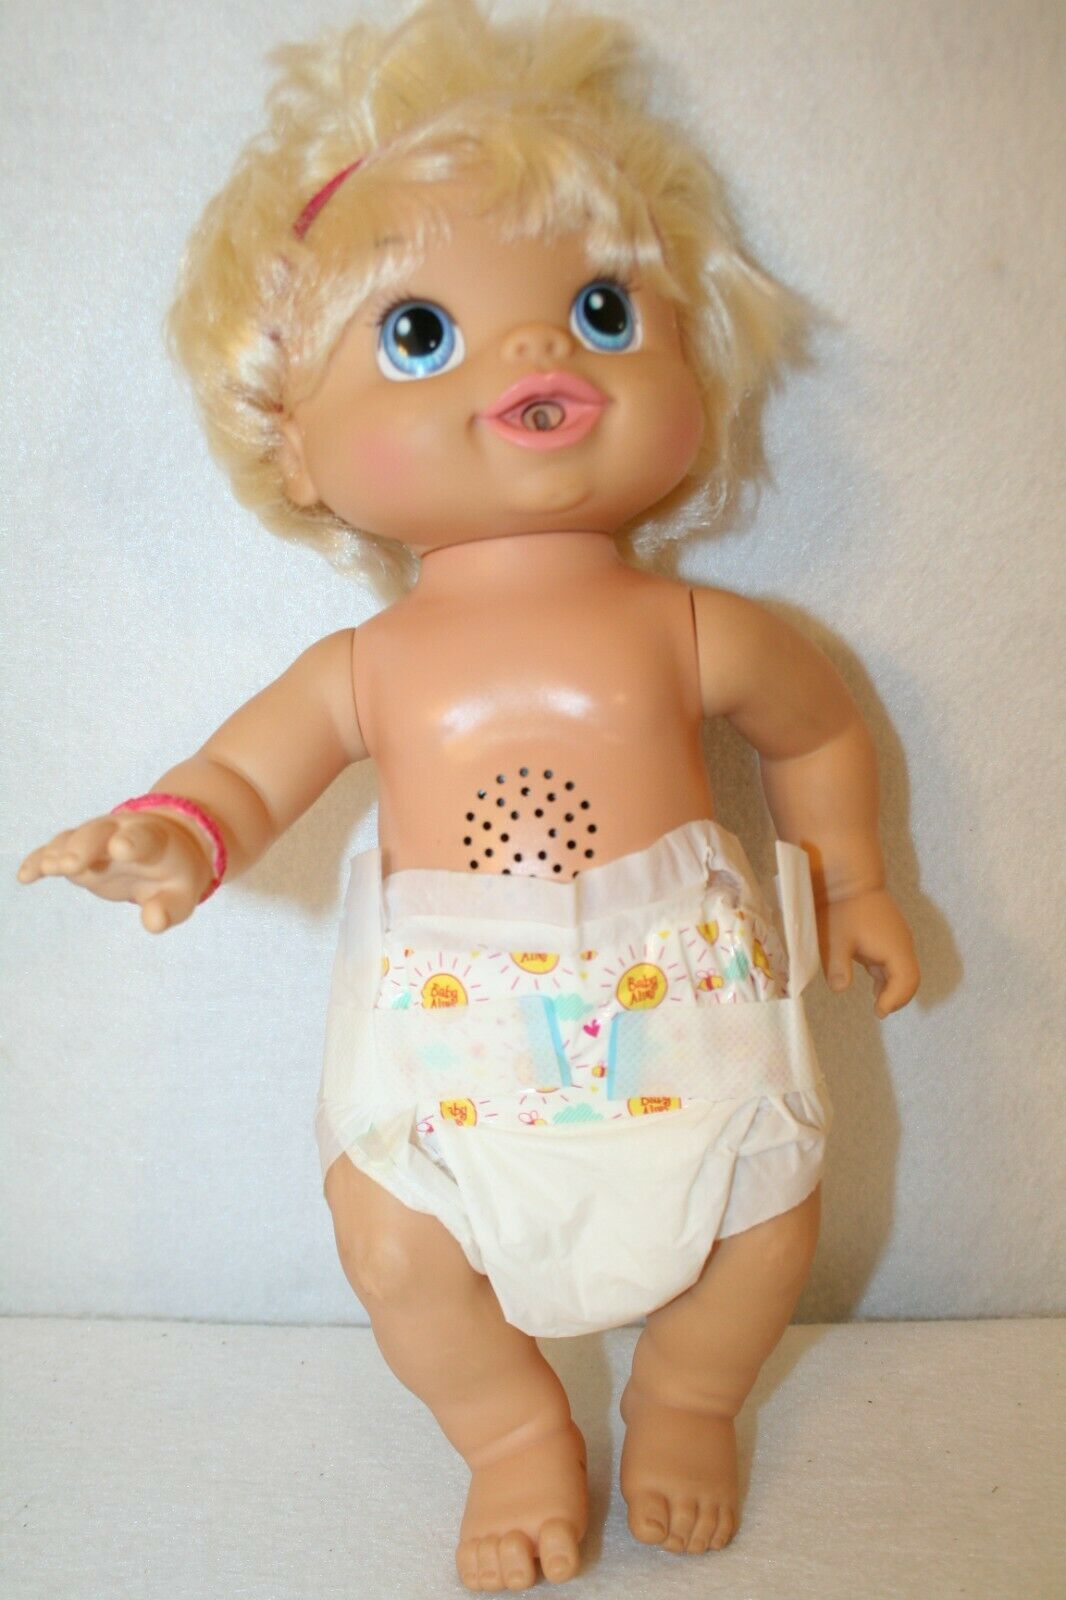 Baby Alive 2010 Blonde Blue Eye Talks Giggles Kicks Eats 14" Doll C015D WORKS - $64.95